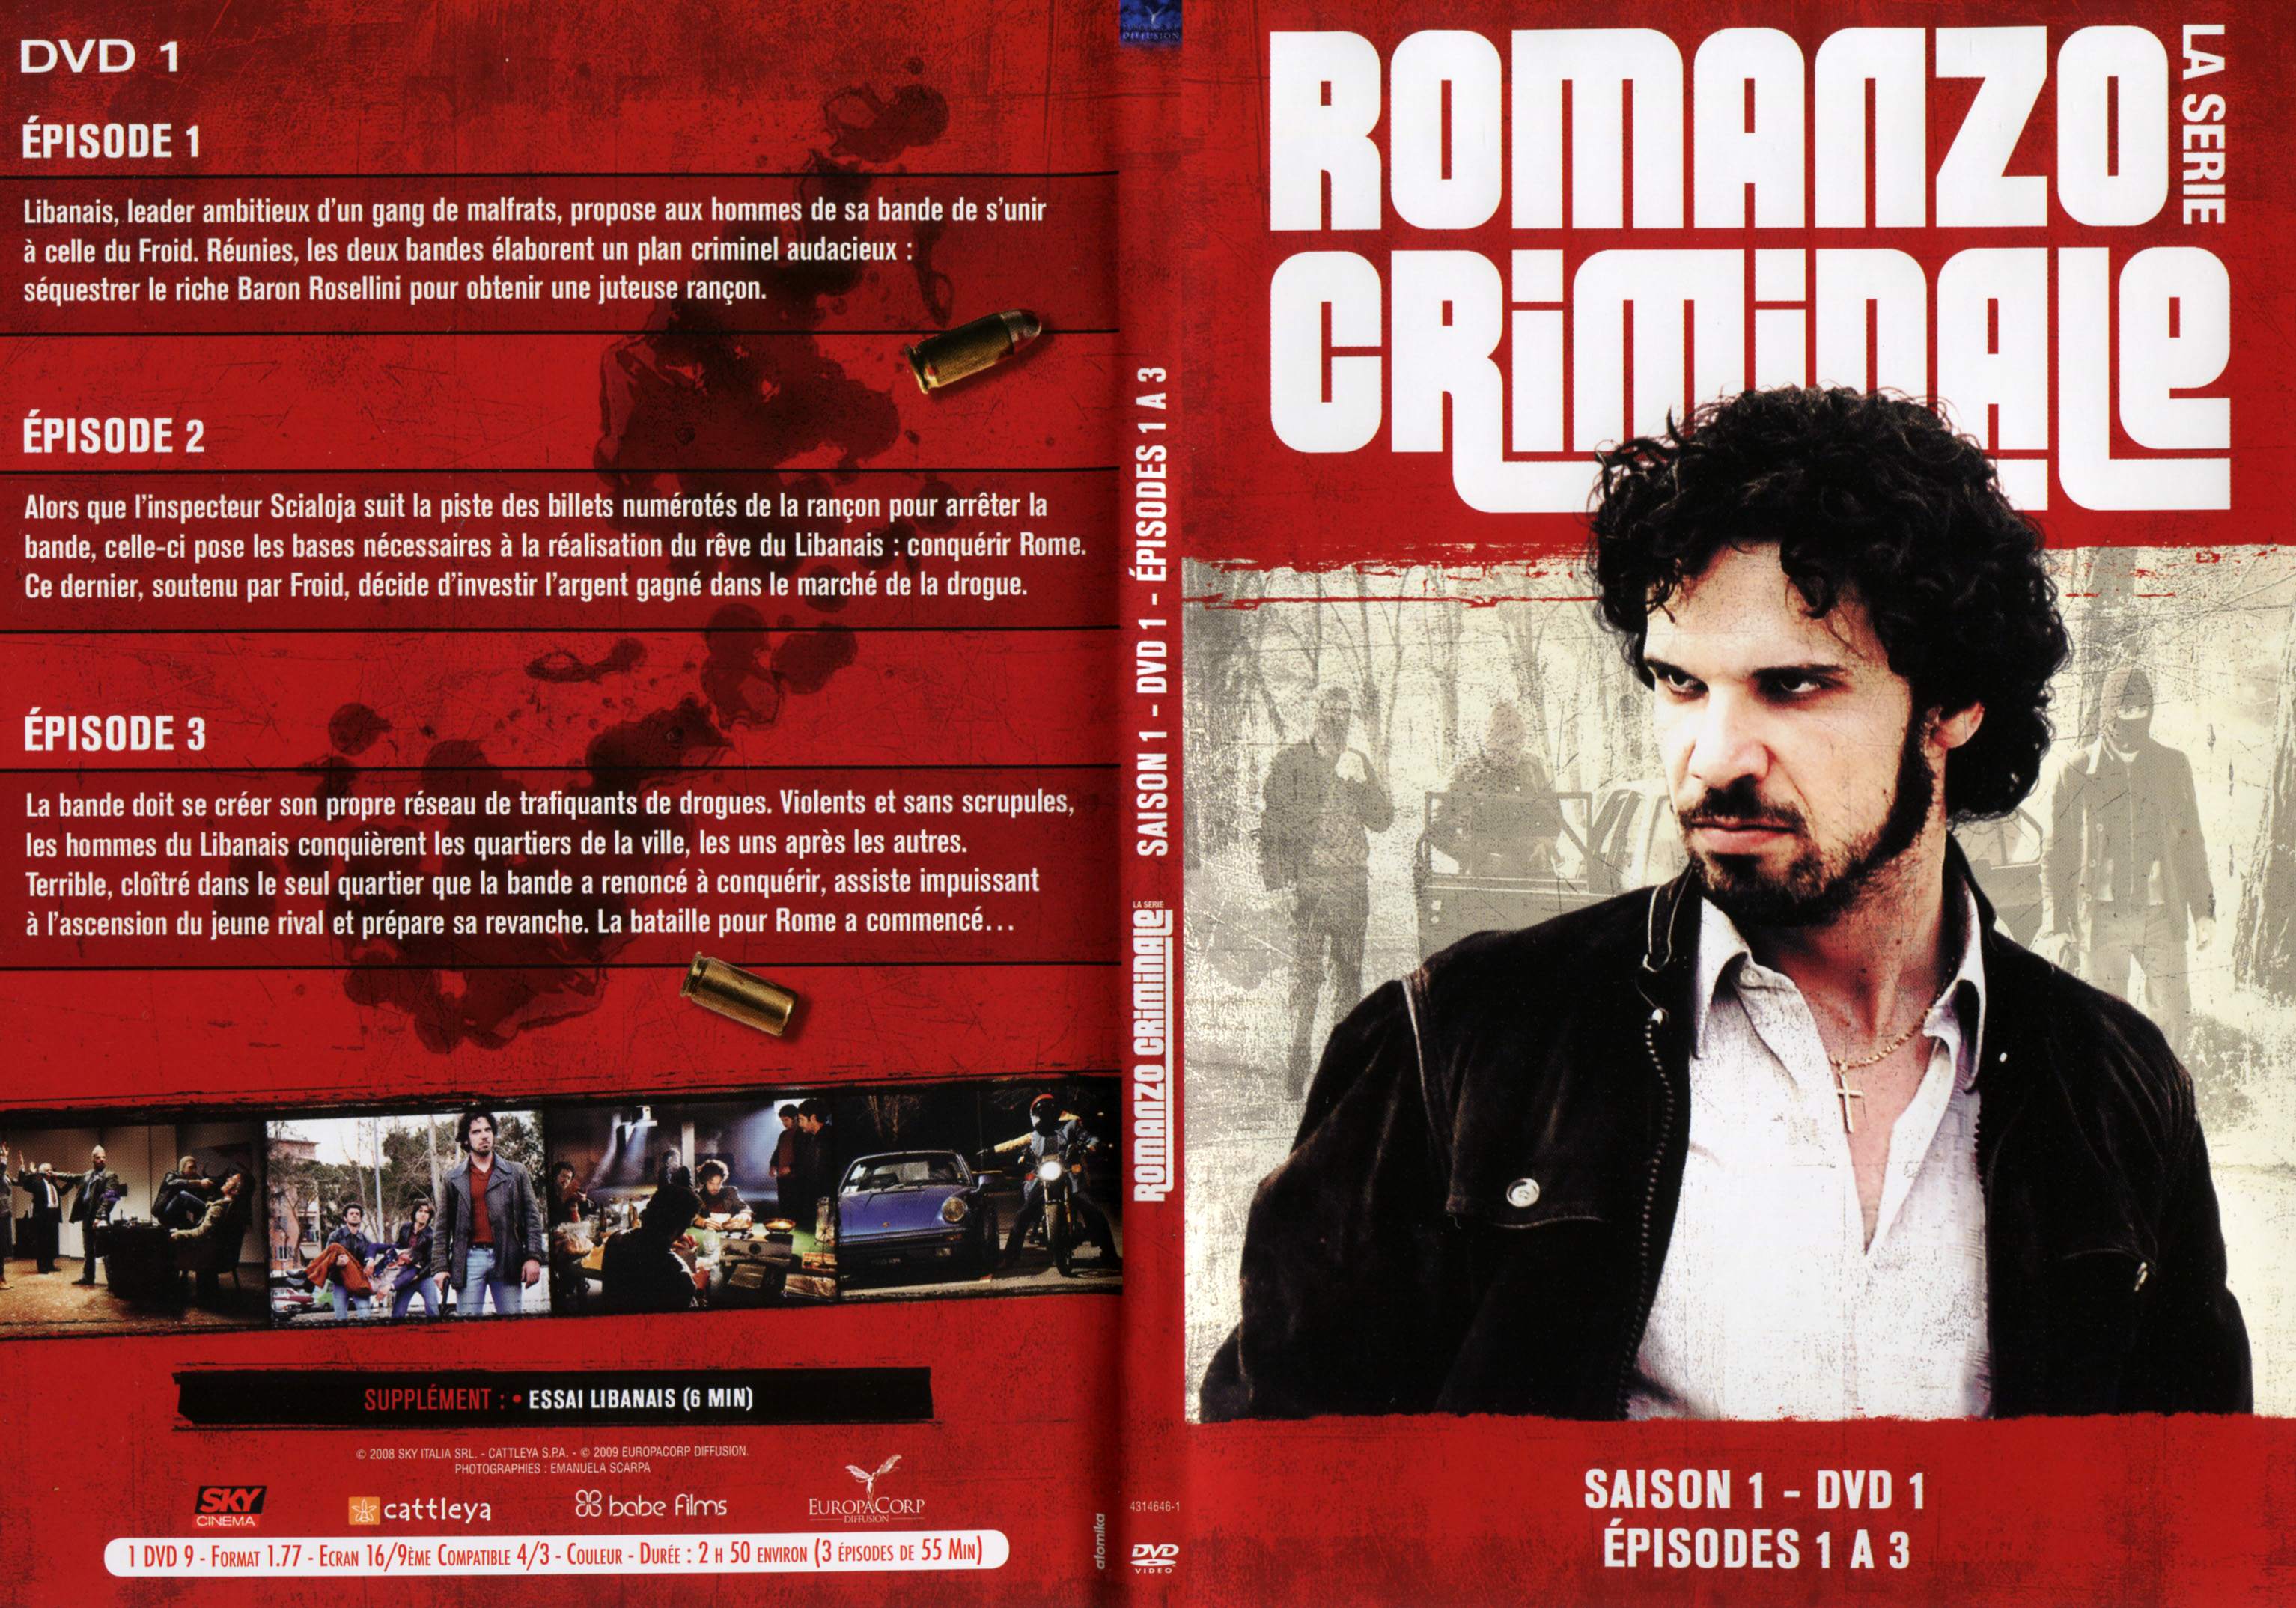 Jaquette DVD Romanzo criminale Saison 1 DVD 1